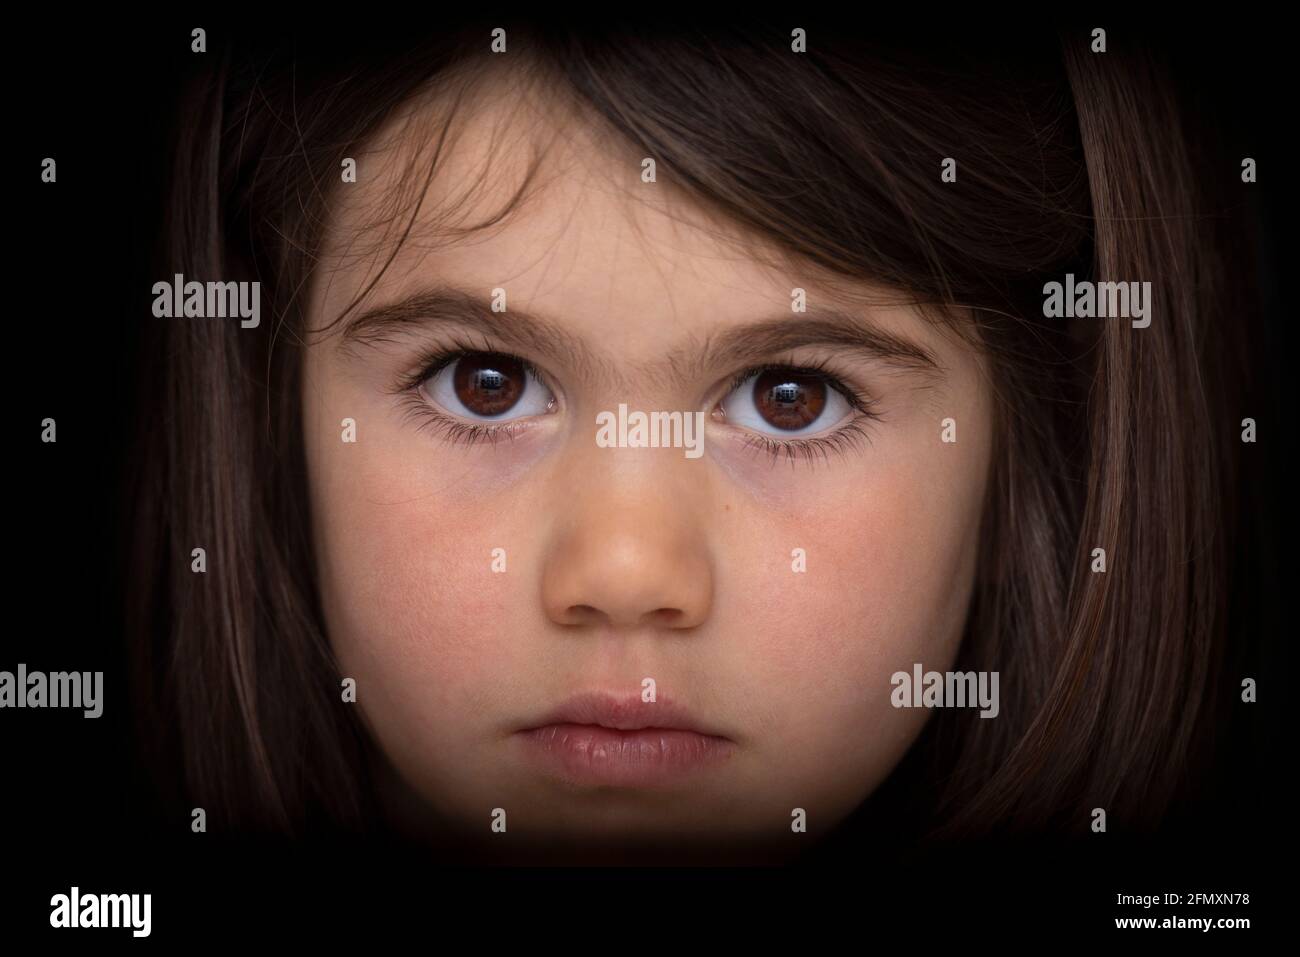 Retrato de una chica seria de cuatro años. Mirada intensa. Foto de stock